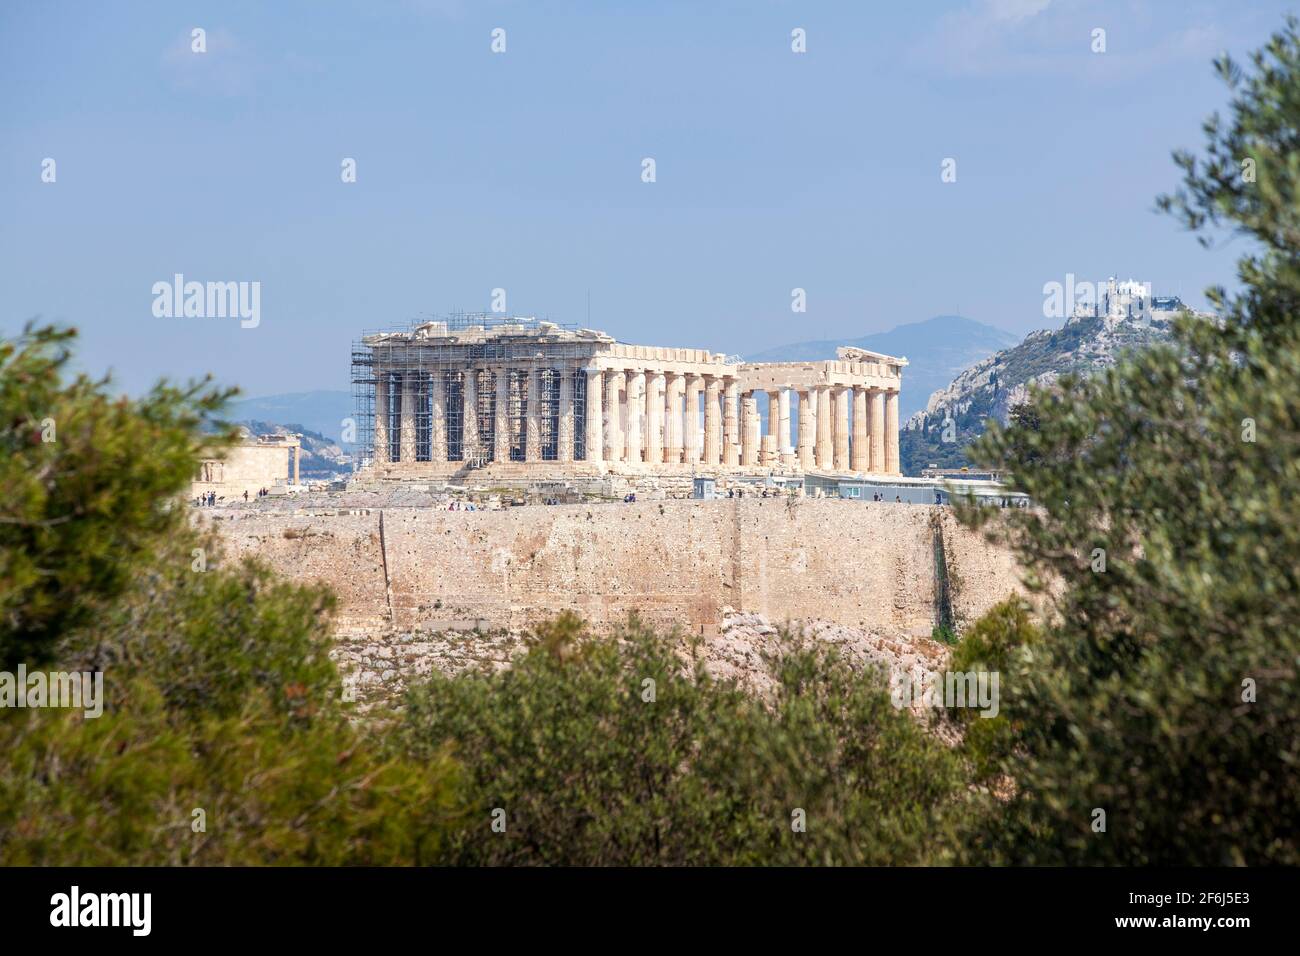 Vista del Partenón desde la colina Filopappou. Se puede ver el templo del Partenón, del siglo 5th AC, en la colina sagrada de Akropolis, en Atenas, Grecia. Foto de stock